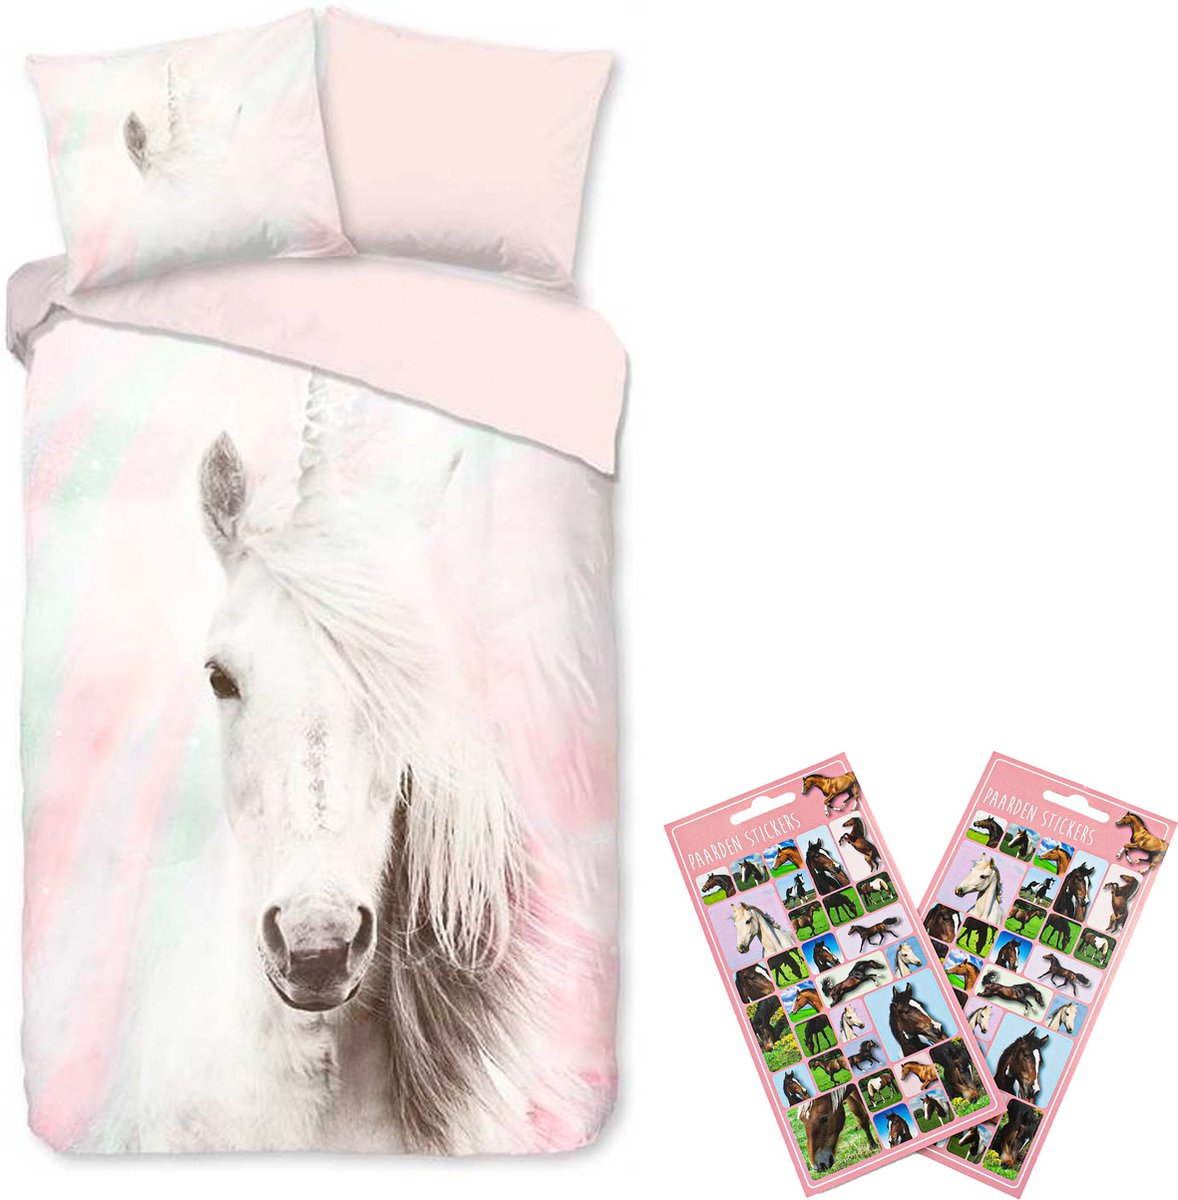 Dekbedovertrek White Unicorn- Eenhoorn dekbed- 1 persoons- 140x200- Katoen- Paarden slaapkamer, incl. Paardenstickers set